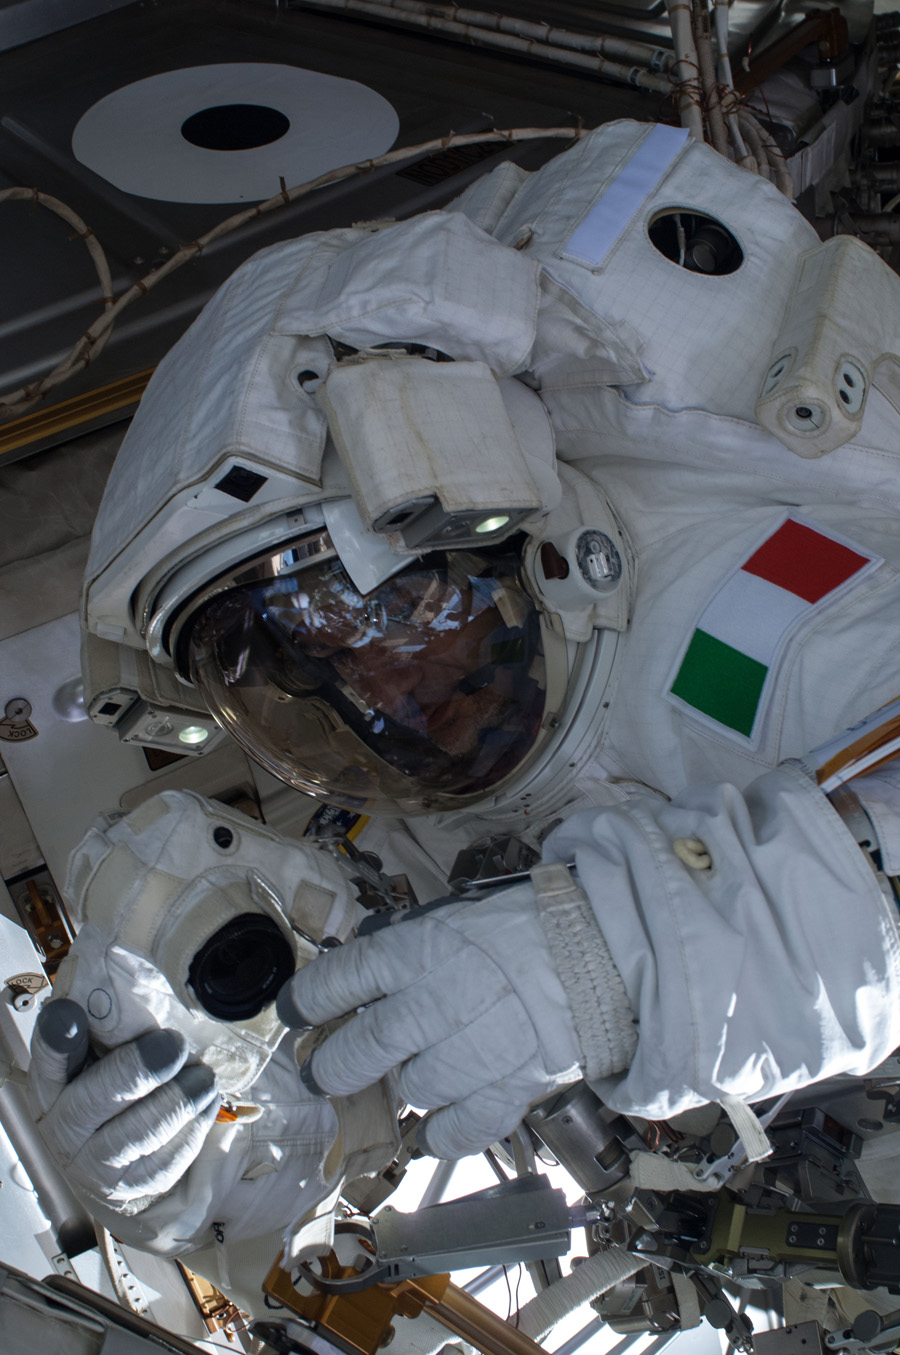 Der Astronaut der Europäischen Weltraumorganisation Luca Parmitano arbeitet am 16. Juli 2013 auf der Internationalen Raumstation. Etwas mehr als eine Stunde nach dem Weltraumspaziergang berichtet Parmitano, dass Wasser hinter seinem Kopf in seinem Helm schwimmt.  Das Wasser stellte kein unmittelbares Gesundheitsrisiko für Parmitano dar, aber Mission Control beschloss, den Weltraumspaziergang vorzeitig zu beenden.  Dieses Bild wurde am 16. Juli 2013 veröffentlicht.